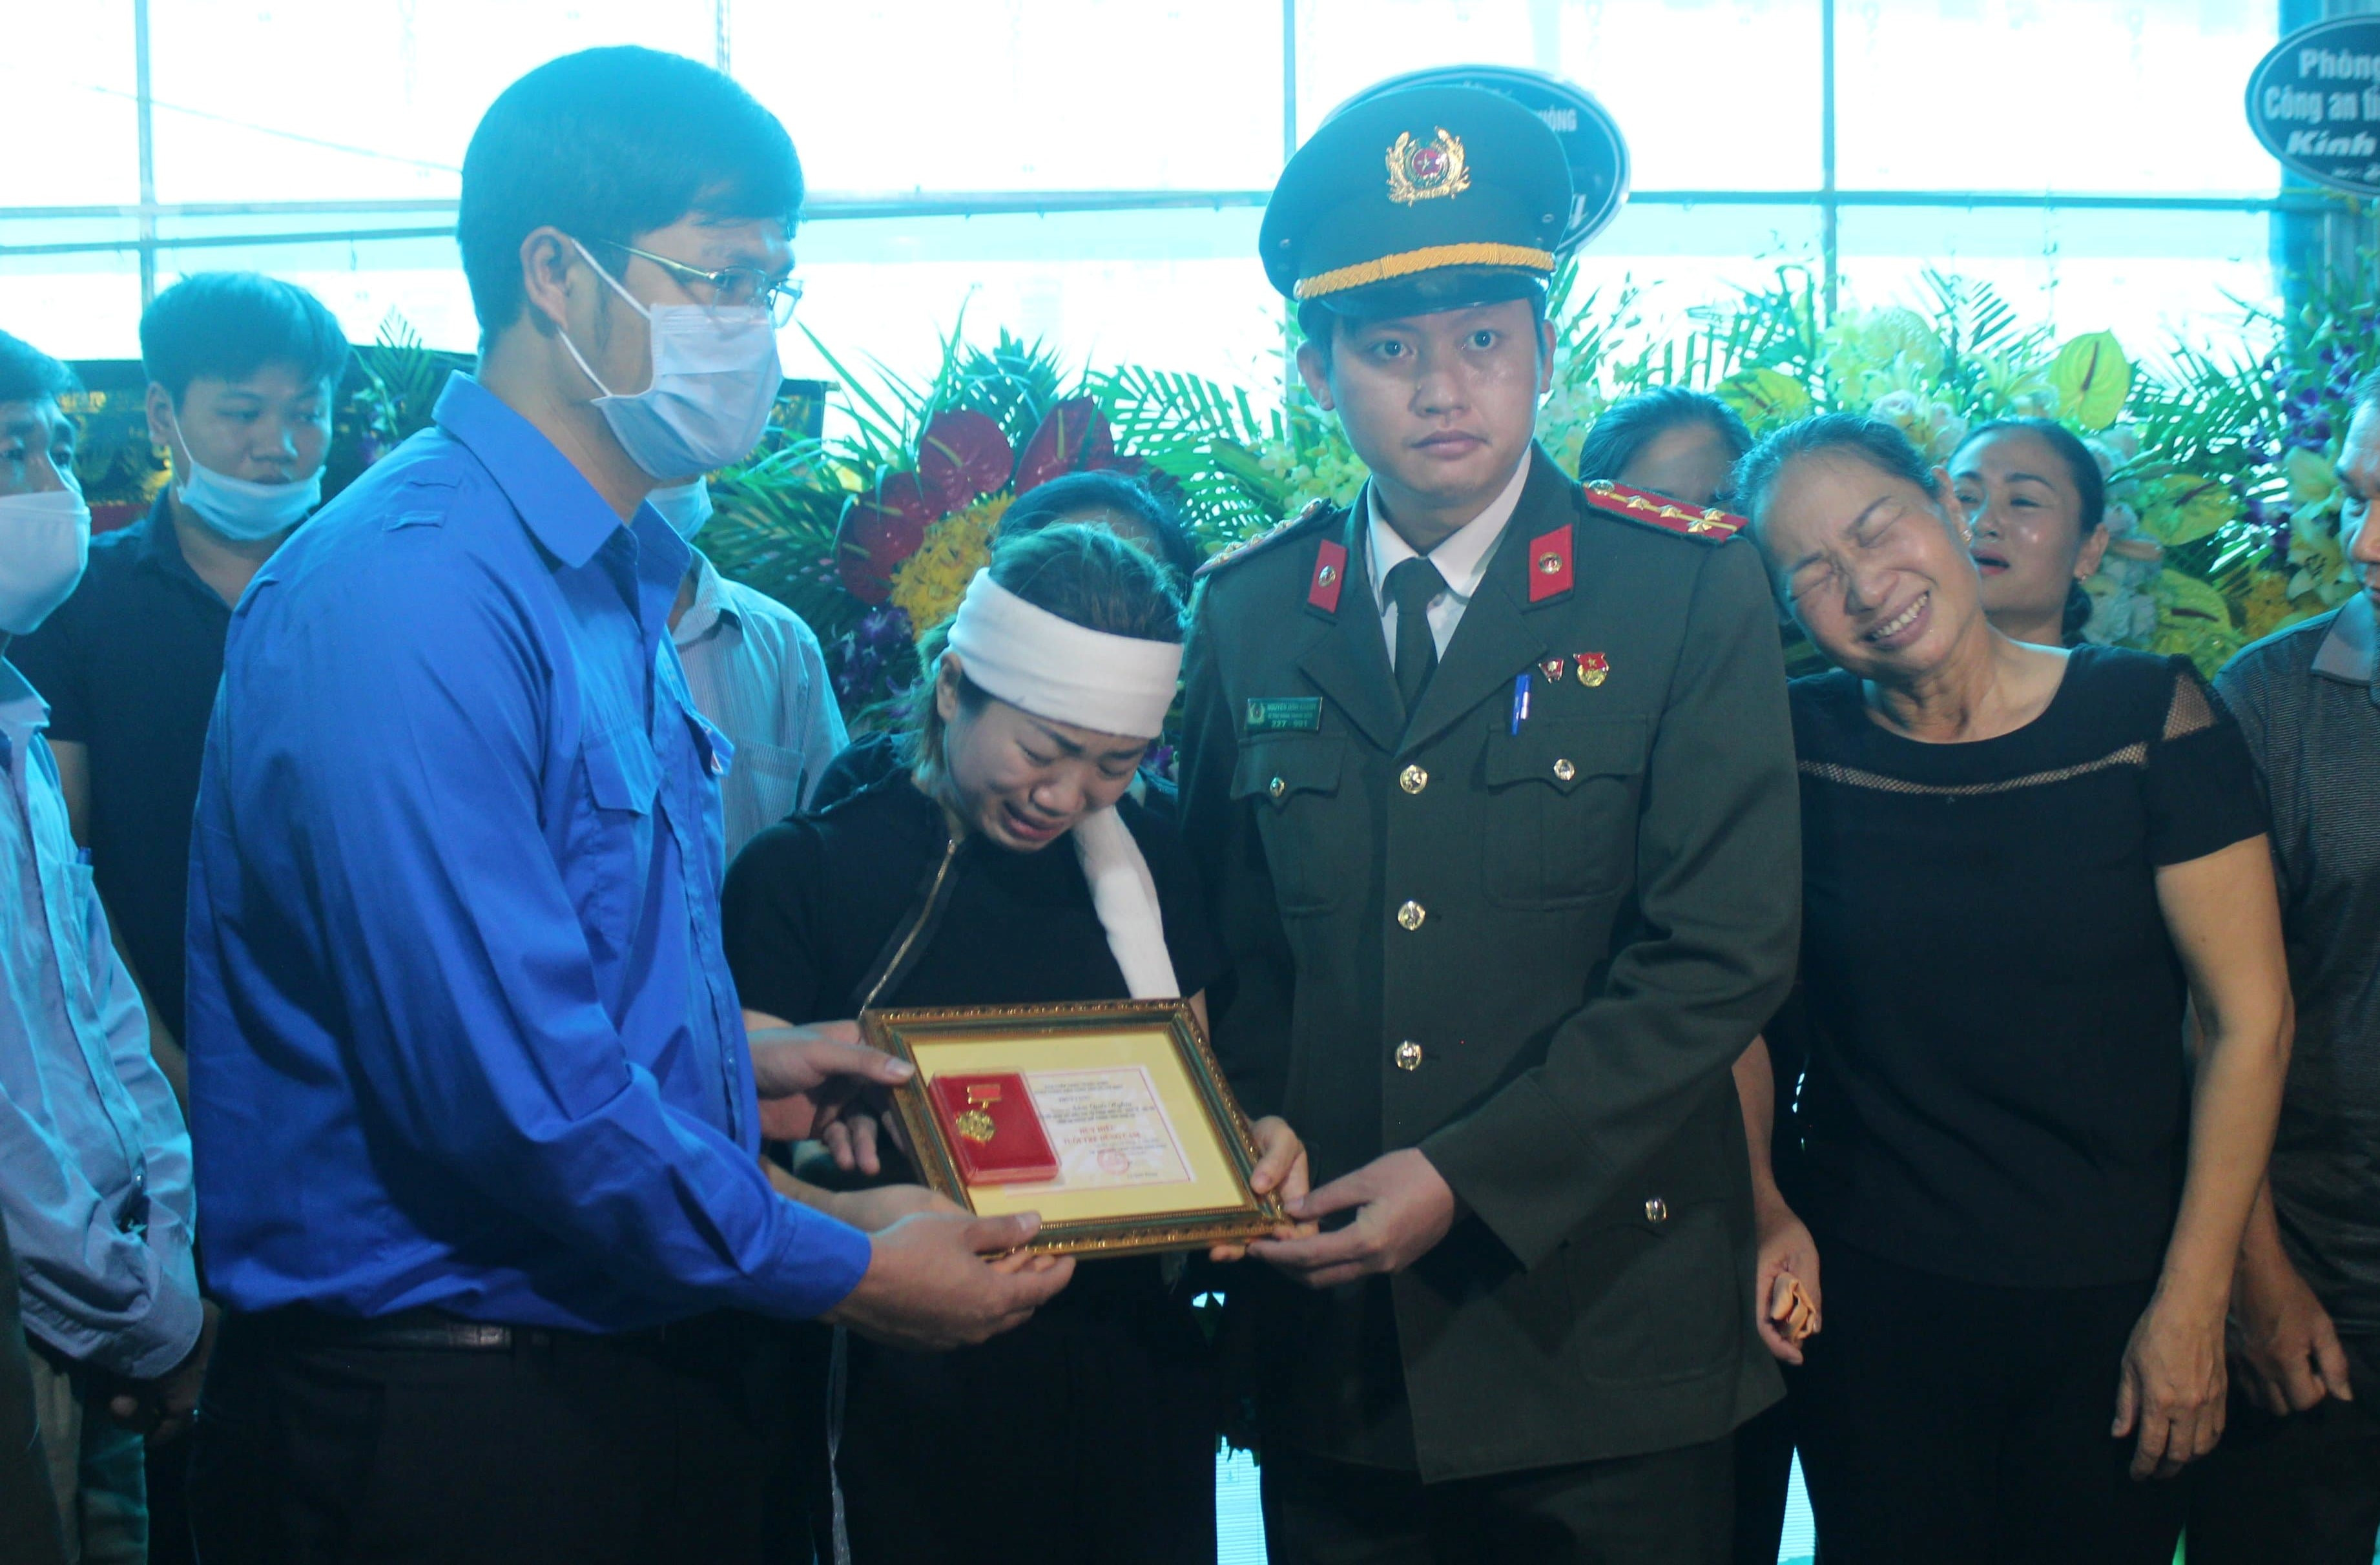 Vợ Thượng úy Nghĩa khóc lịm khi nhận Huy hiệu tuổi trẻ dũng cảm của chồng. Ảnh: CTV